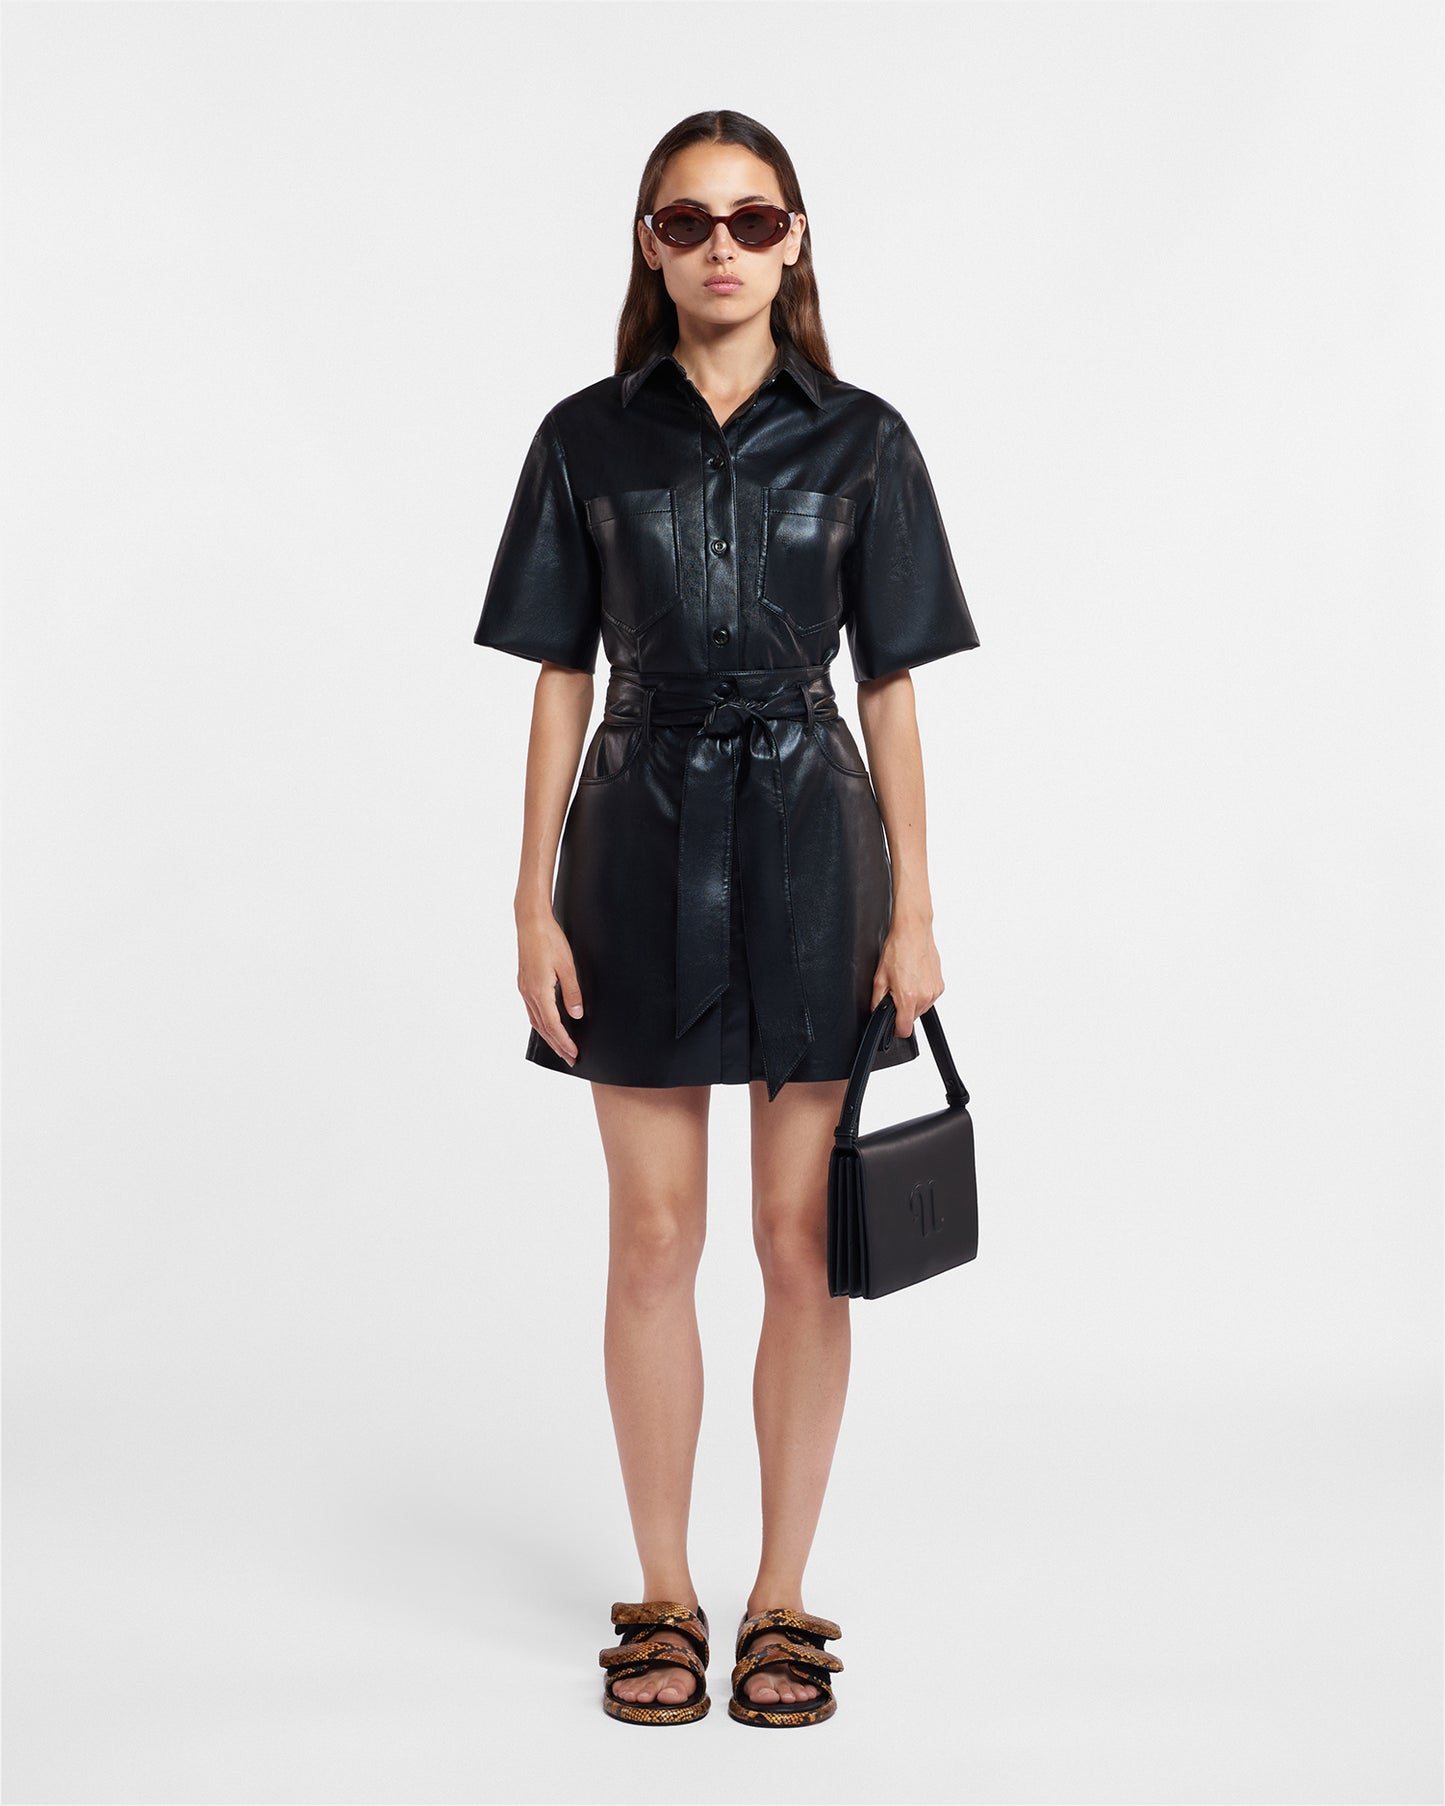 Meda - Archive Okobor™ Alt-Leather Mini Skirt - Black